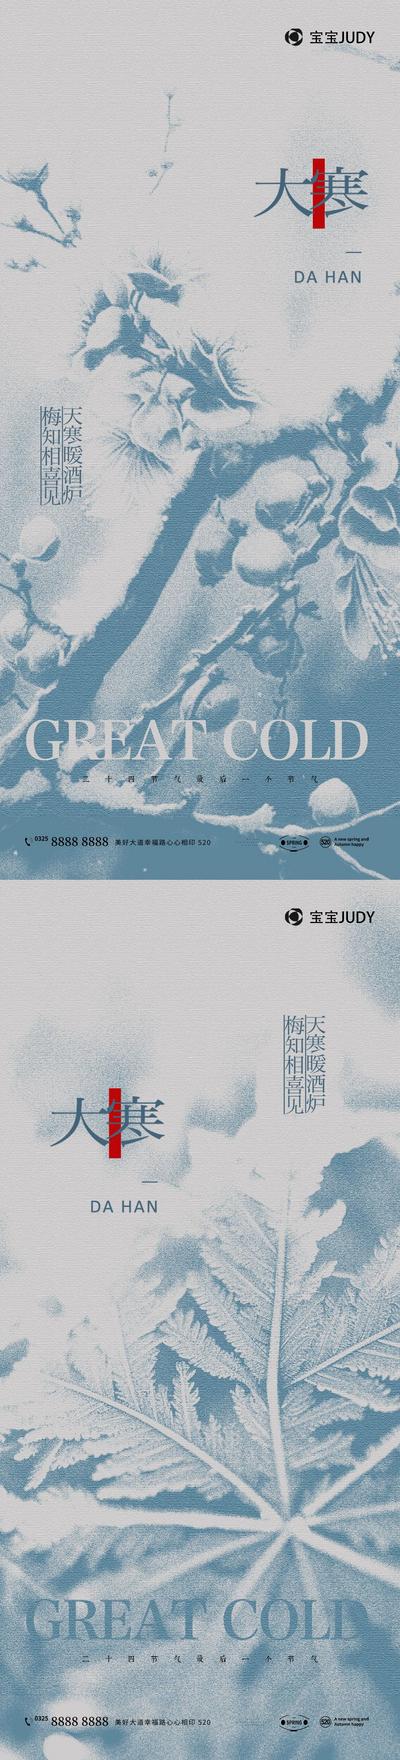 【南门网】广告 海报 地产 小寒 节气 大寒 雪 冬季 梅花 亭子 新中式